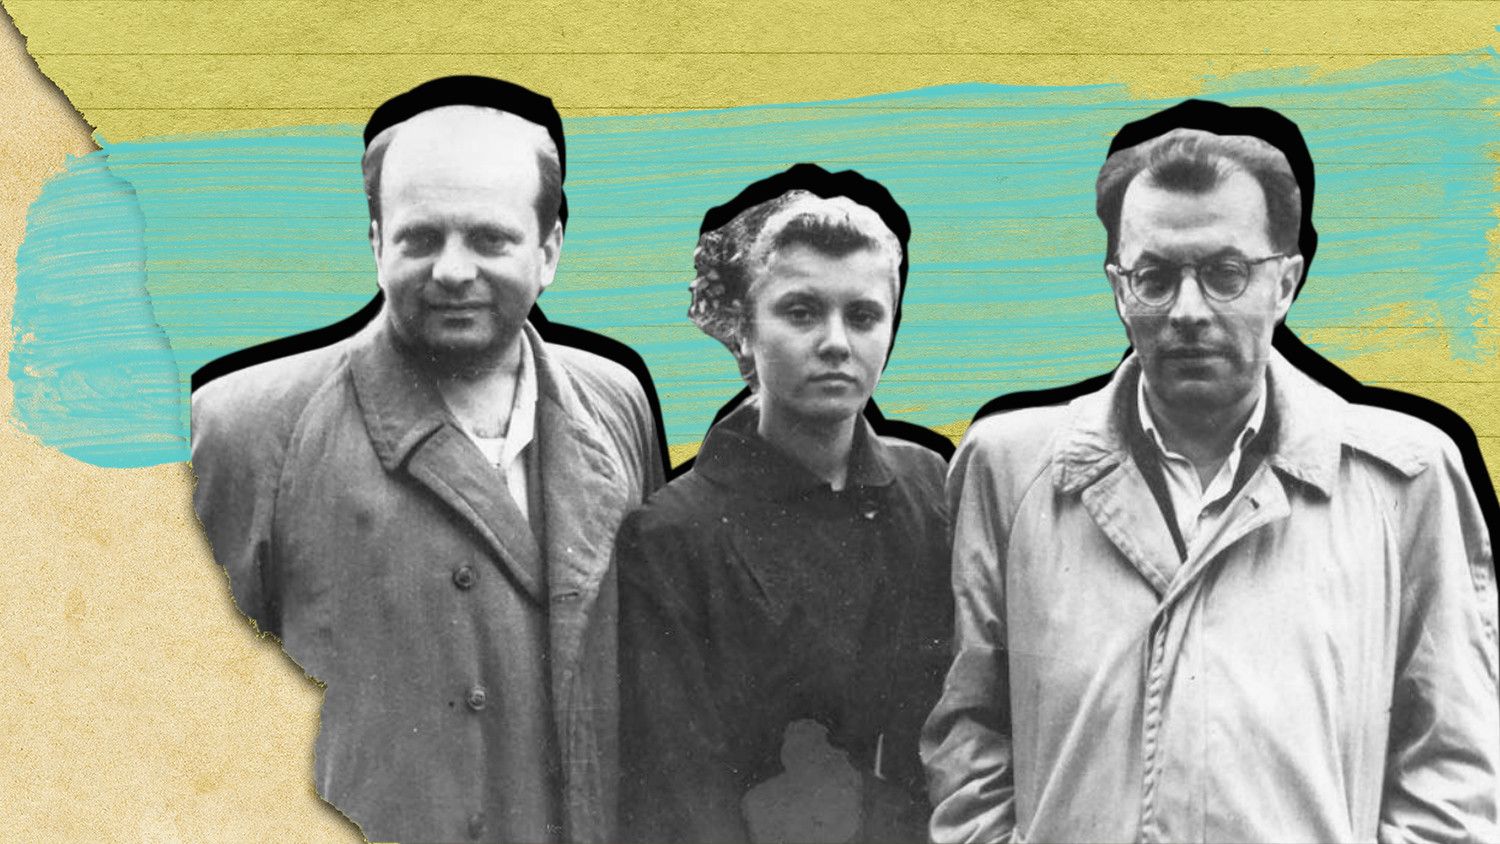 ヴェニアミン・ツケルマン、イリーナ・ツケルマン、イスラエル・ガリンケル。モスクワ、1956年。